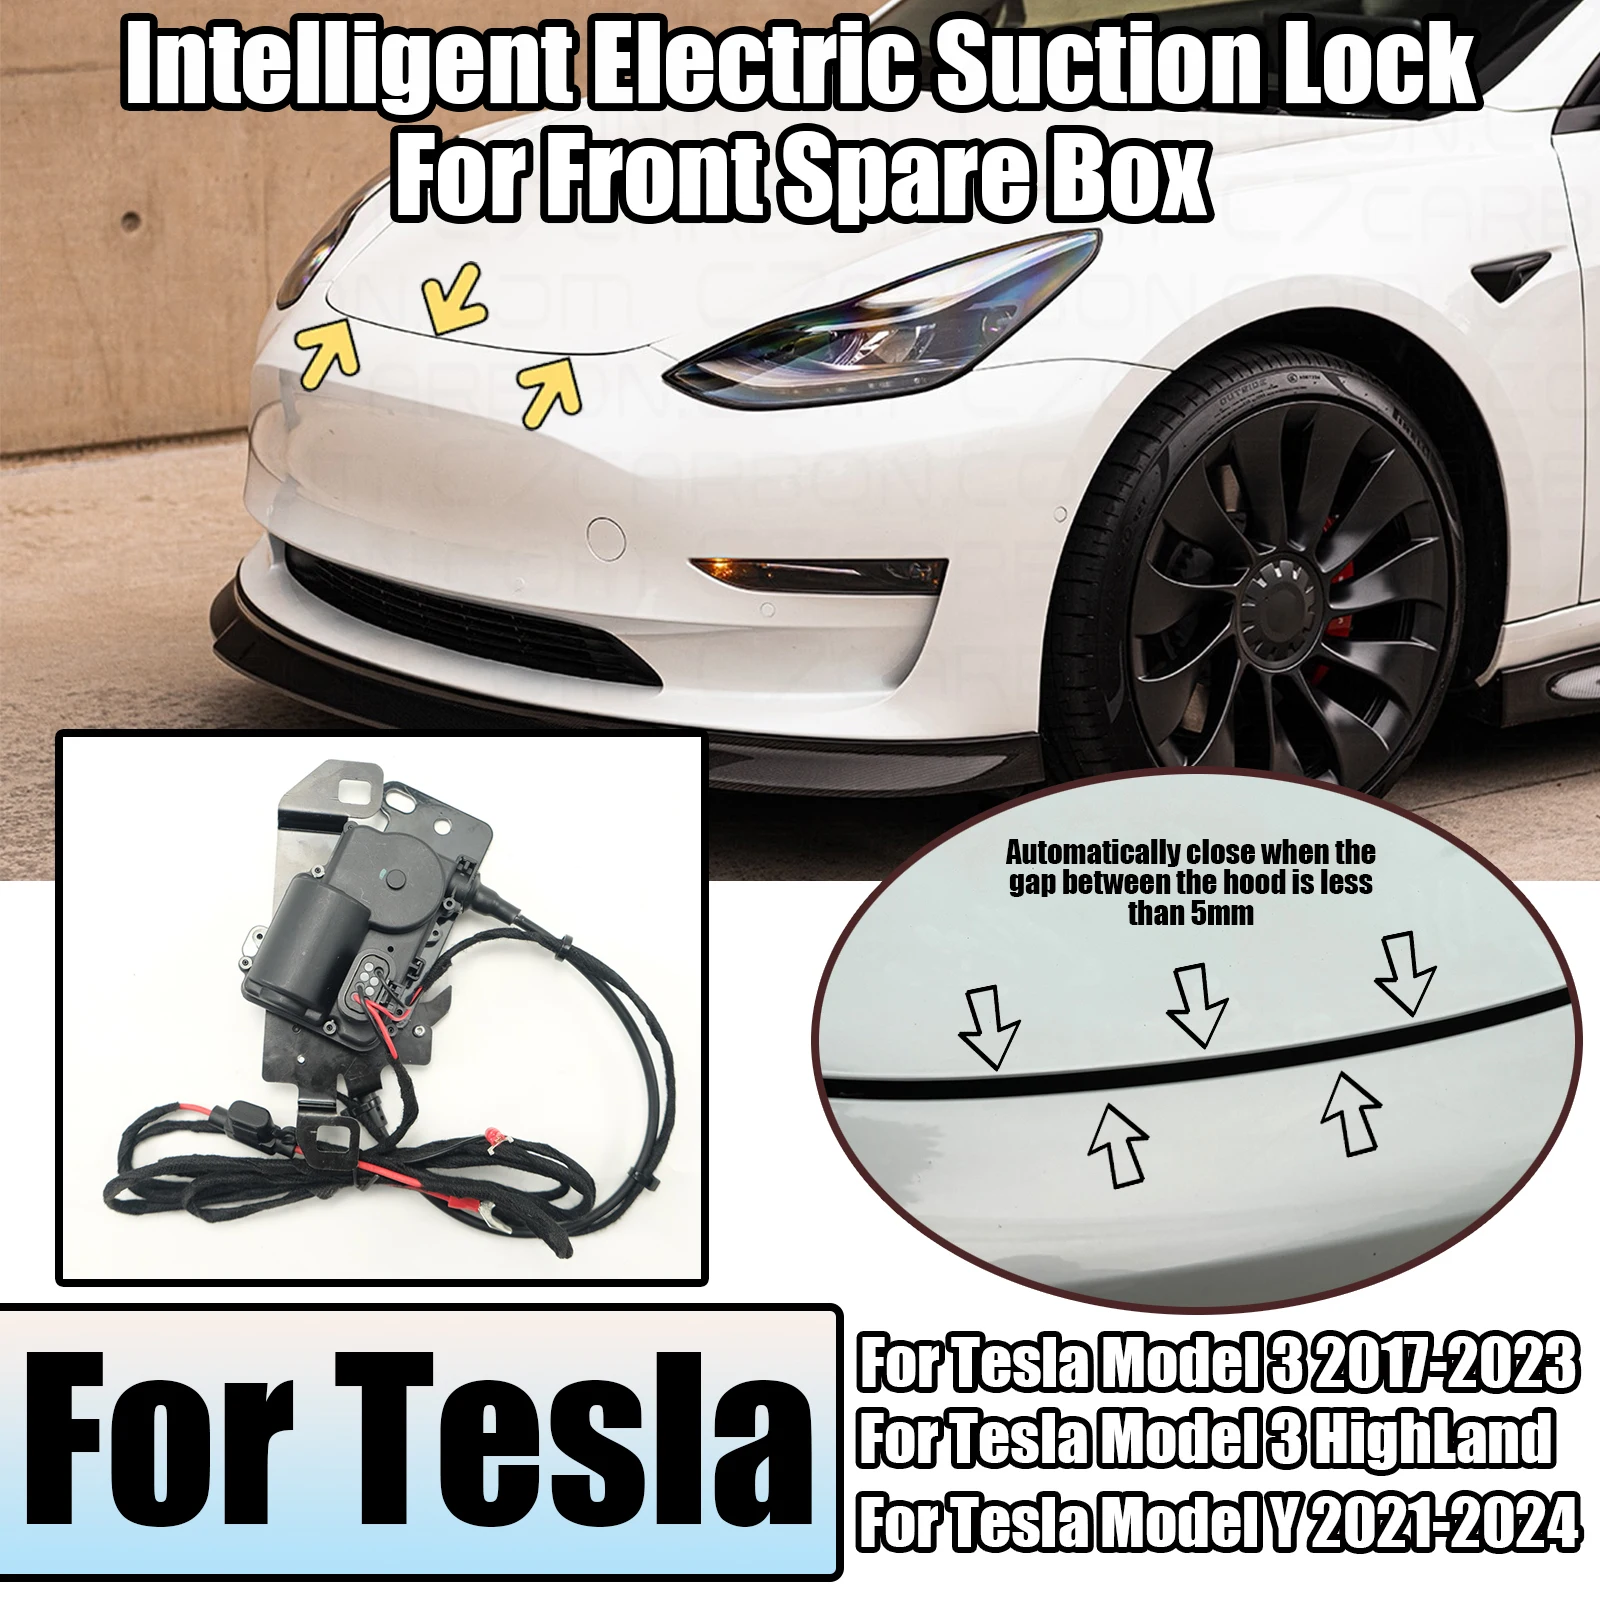 Caixa de sucção tronco frontal para Tesla, fechadura elétrica, fechamento suave, adsorção automática, caixa de reposição, Highland 2017-2024, modelo 3 Y